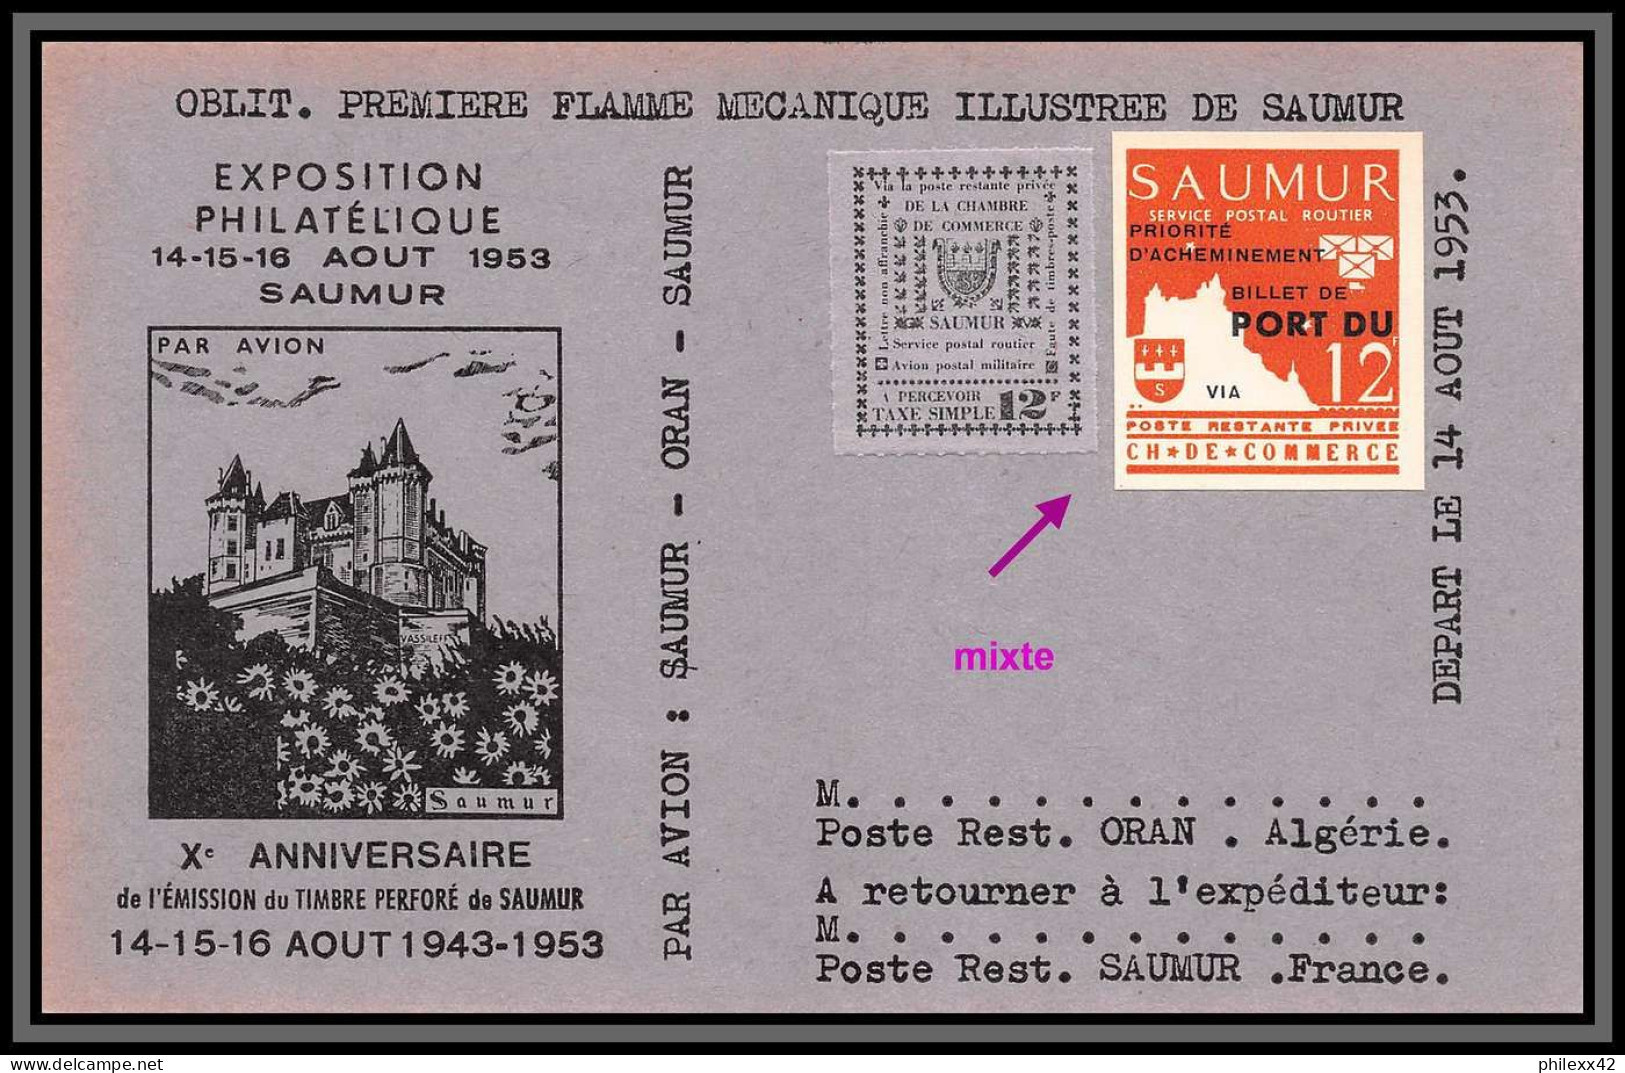 départ 1 euro - 85618/ collection de timbres de grève - saumur 1953 bel ensemble cote +/- 1000 euros - france